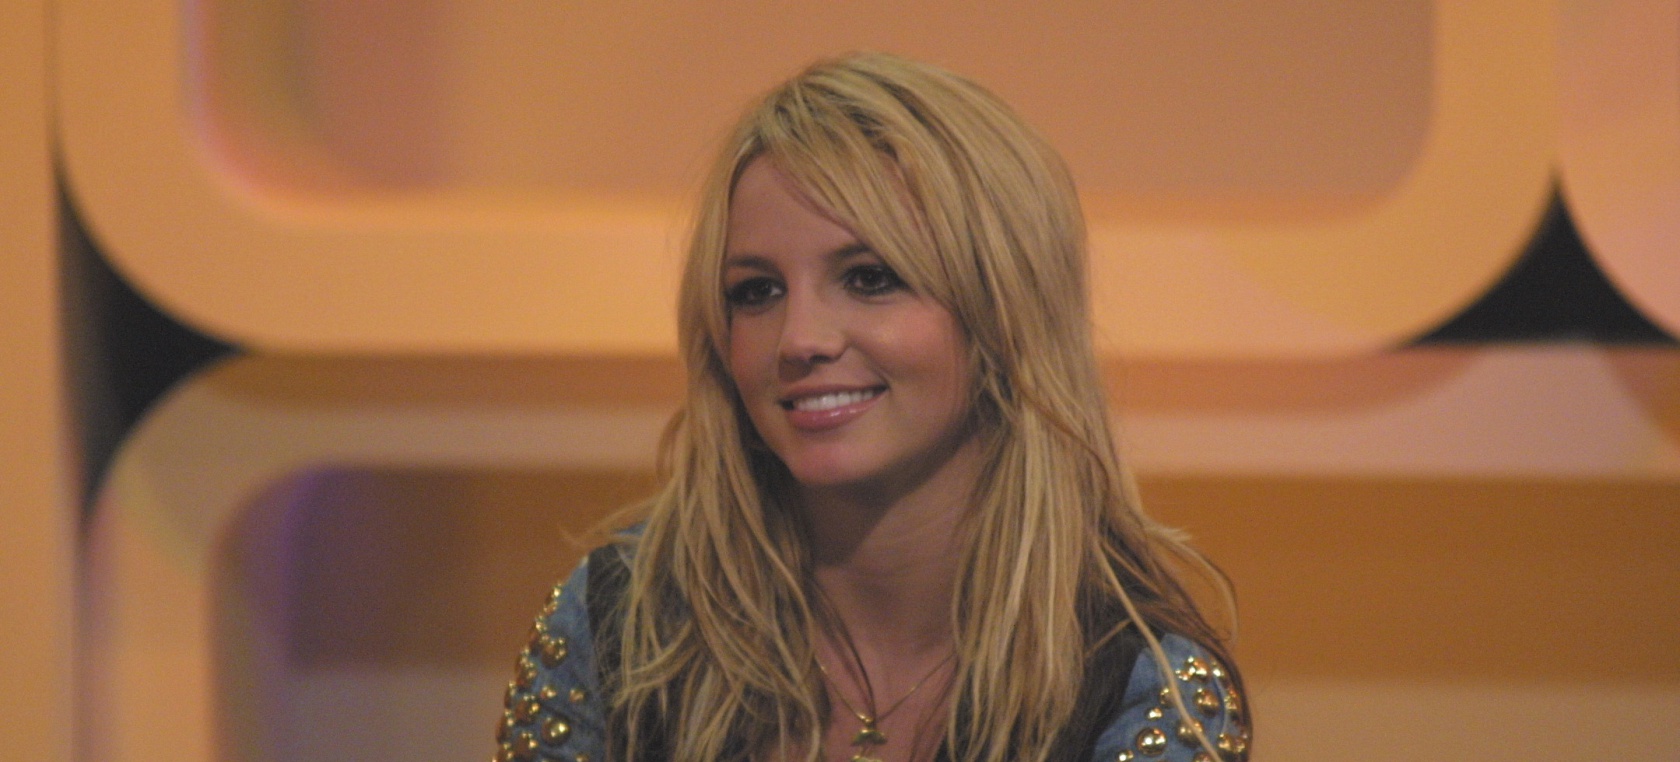 El sexismo hostil sufrido por Britney Spears: “¿Sigues siendo virgen?”, “¿Qué pasa con tu ropa?” 